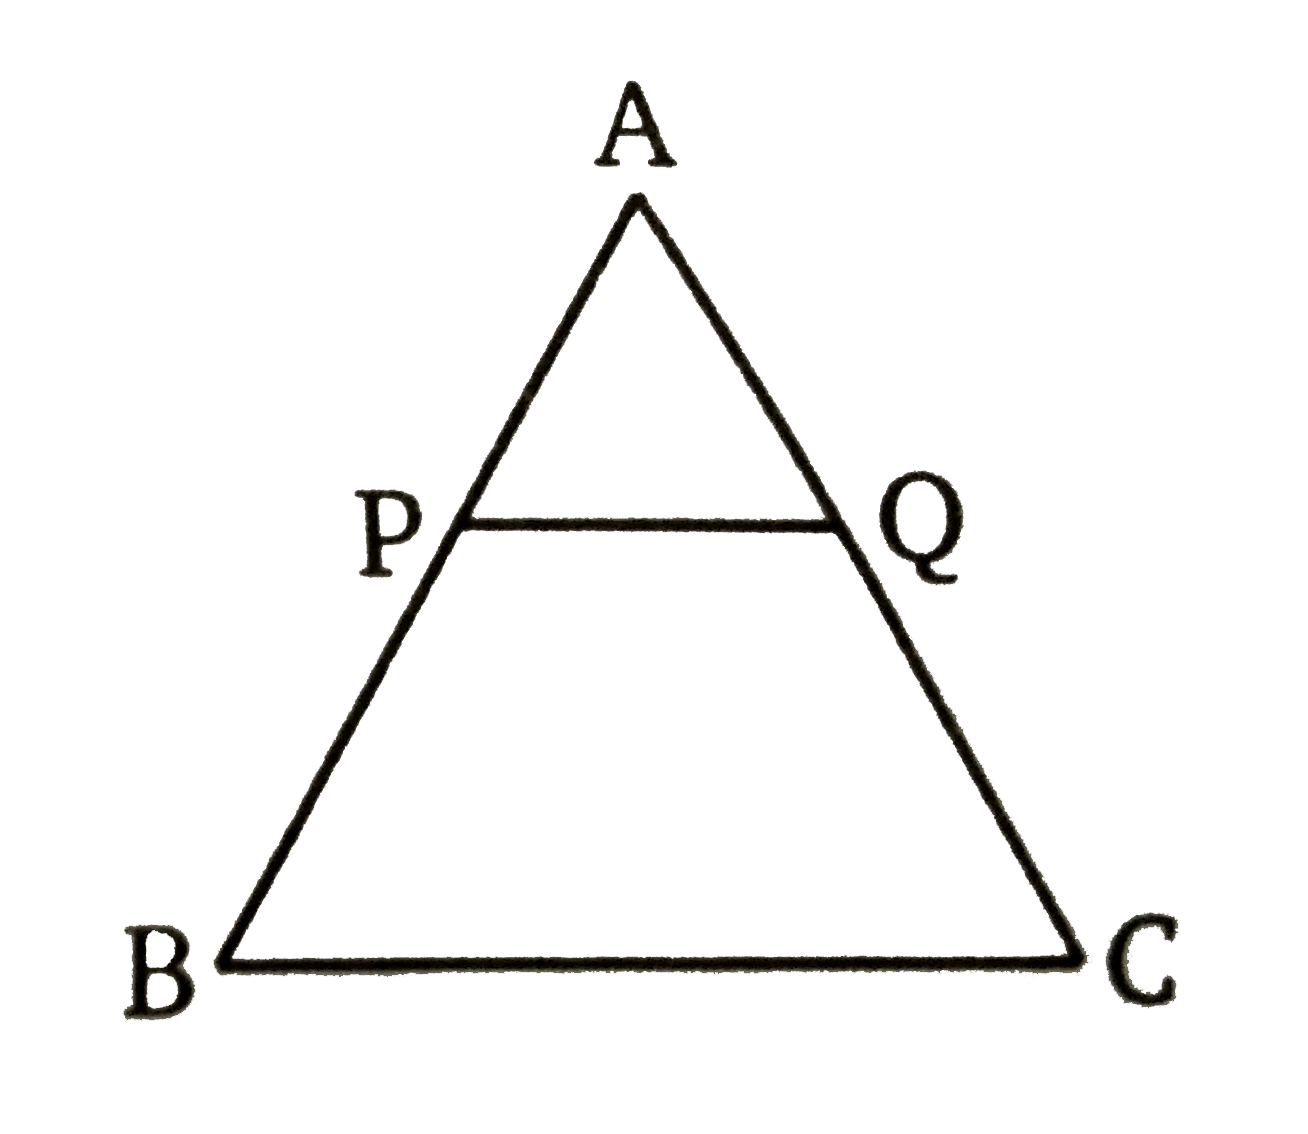 दी गई आकृति में,  PQ||BC तथा AP : PB = 1 :2 हो तो    ((triangle APQ)